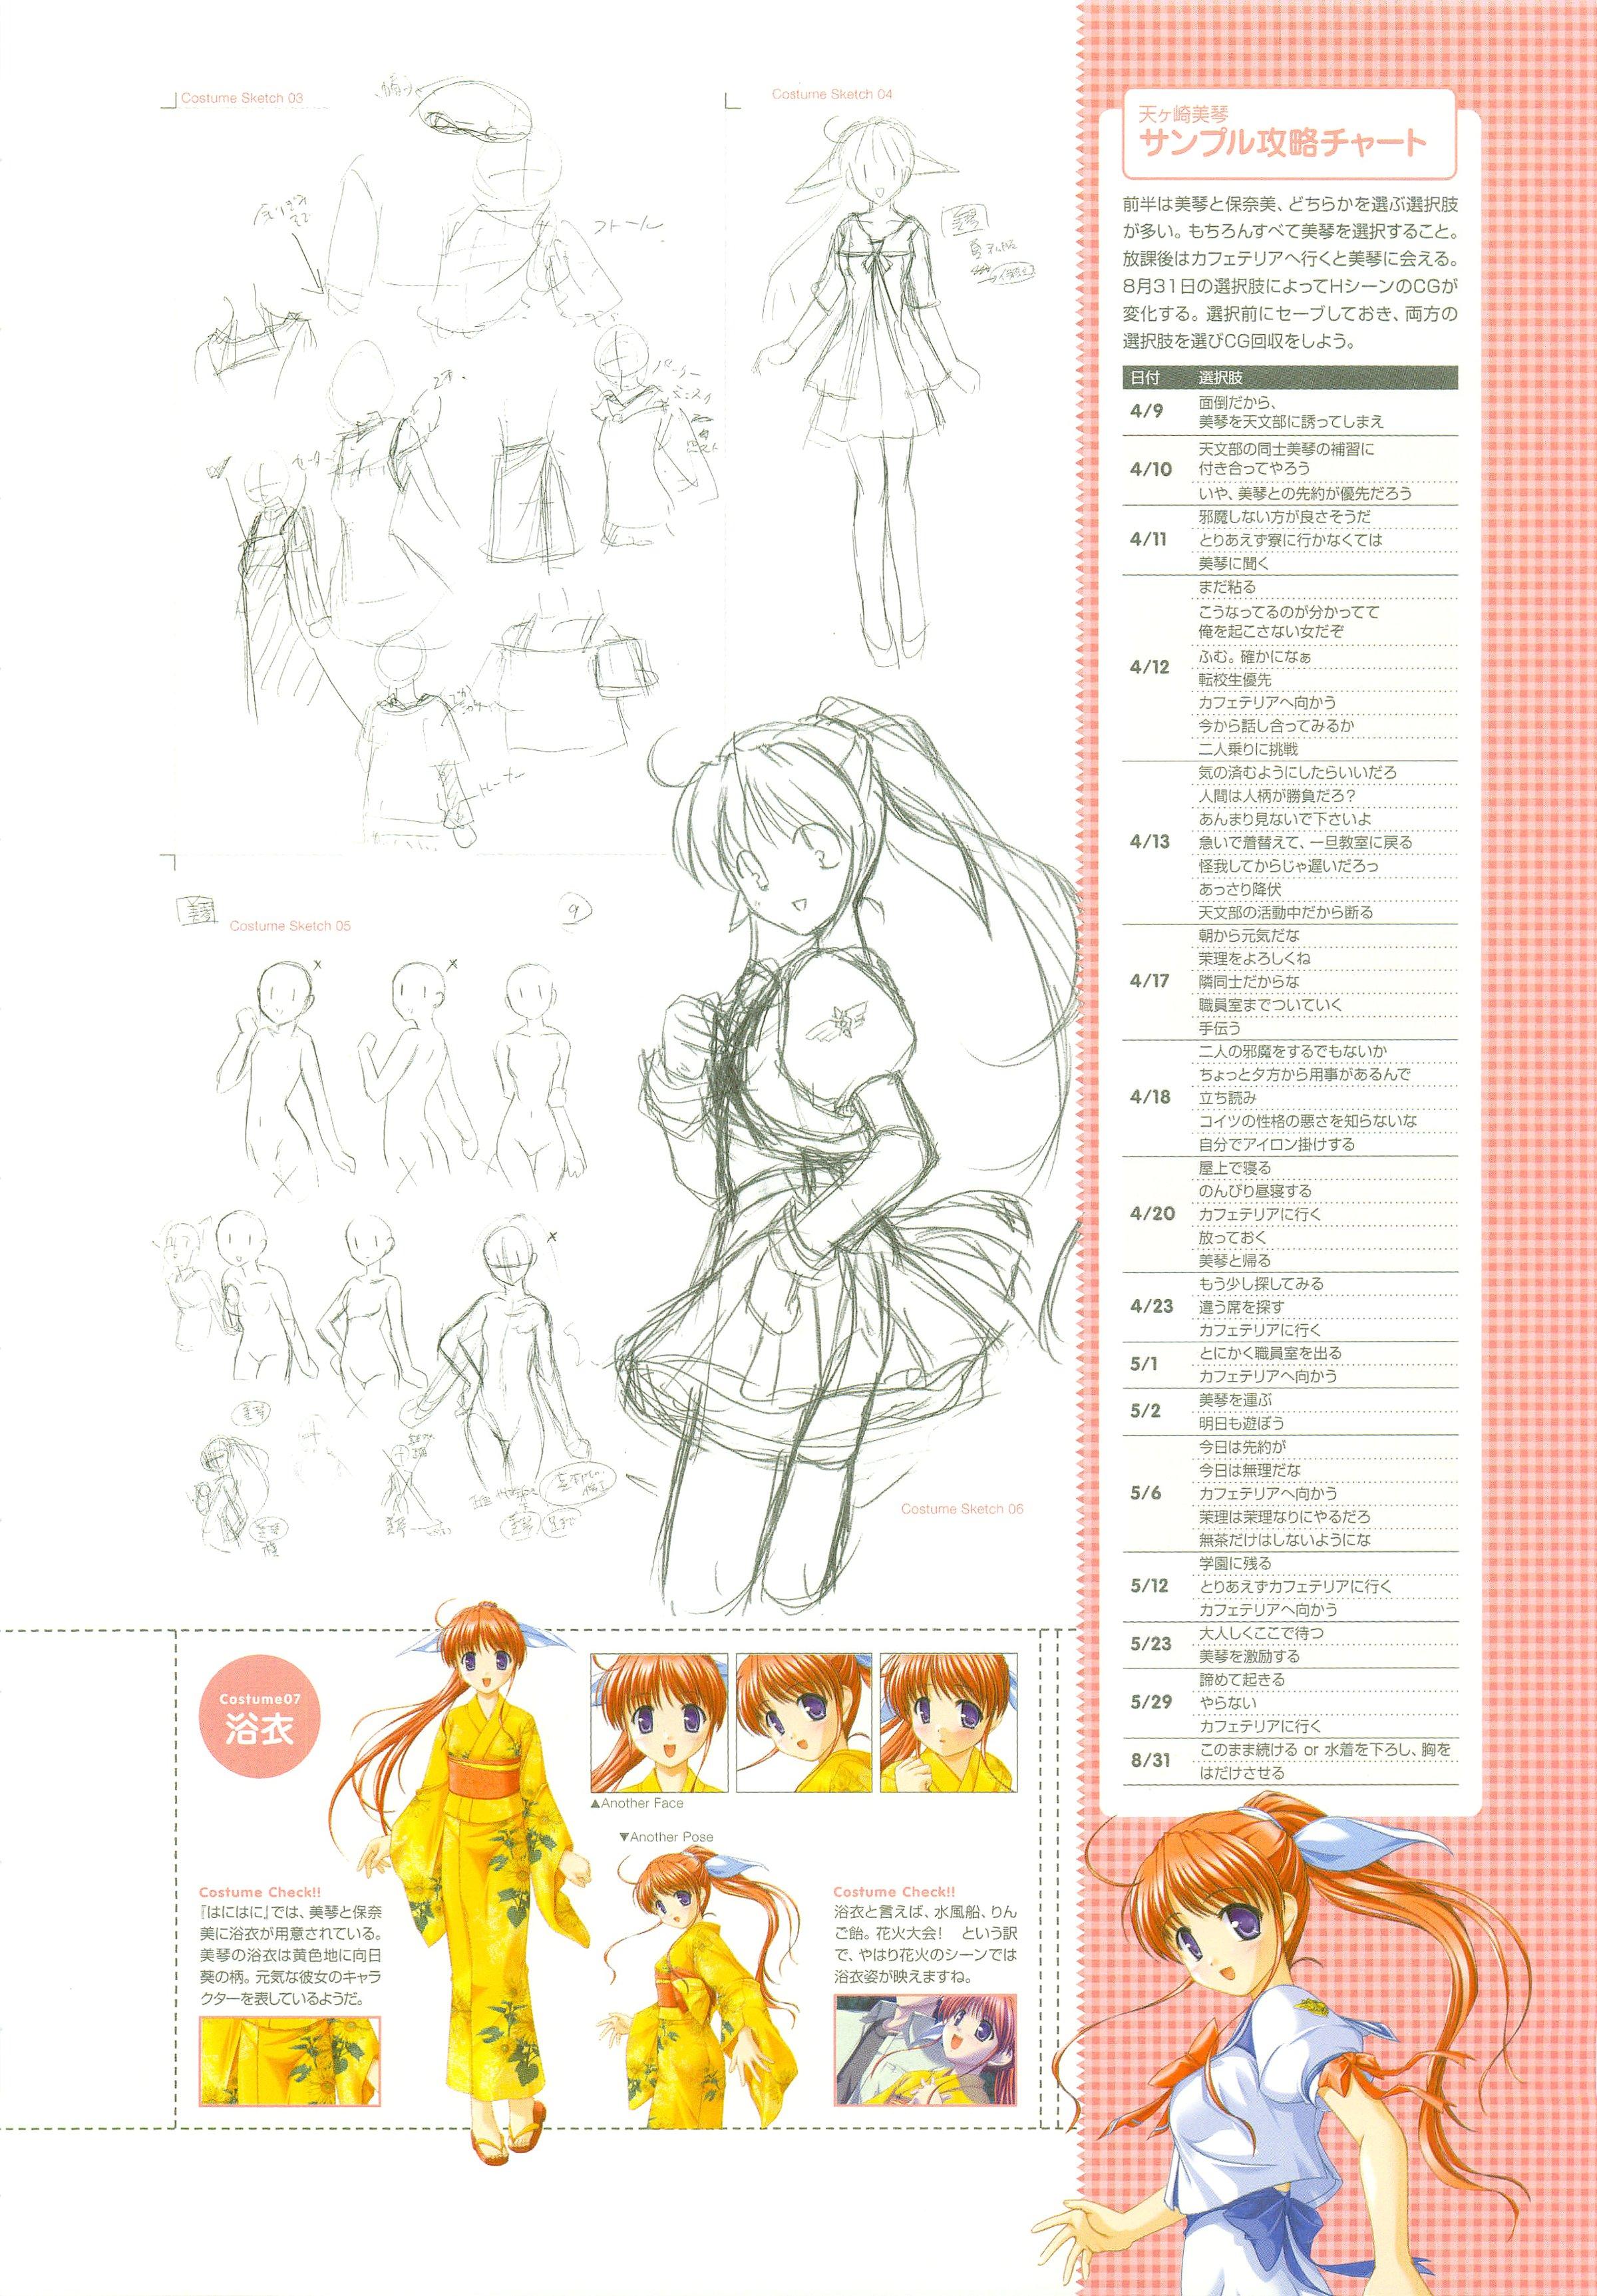 Tsuki wa Higashi ni Hi wa Nishi ni ～ Operation Sanctuary ～ Visual Fan Book 14